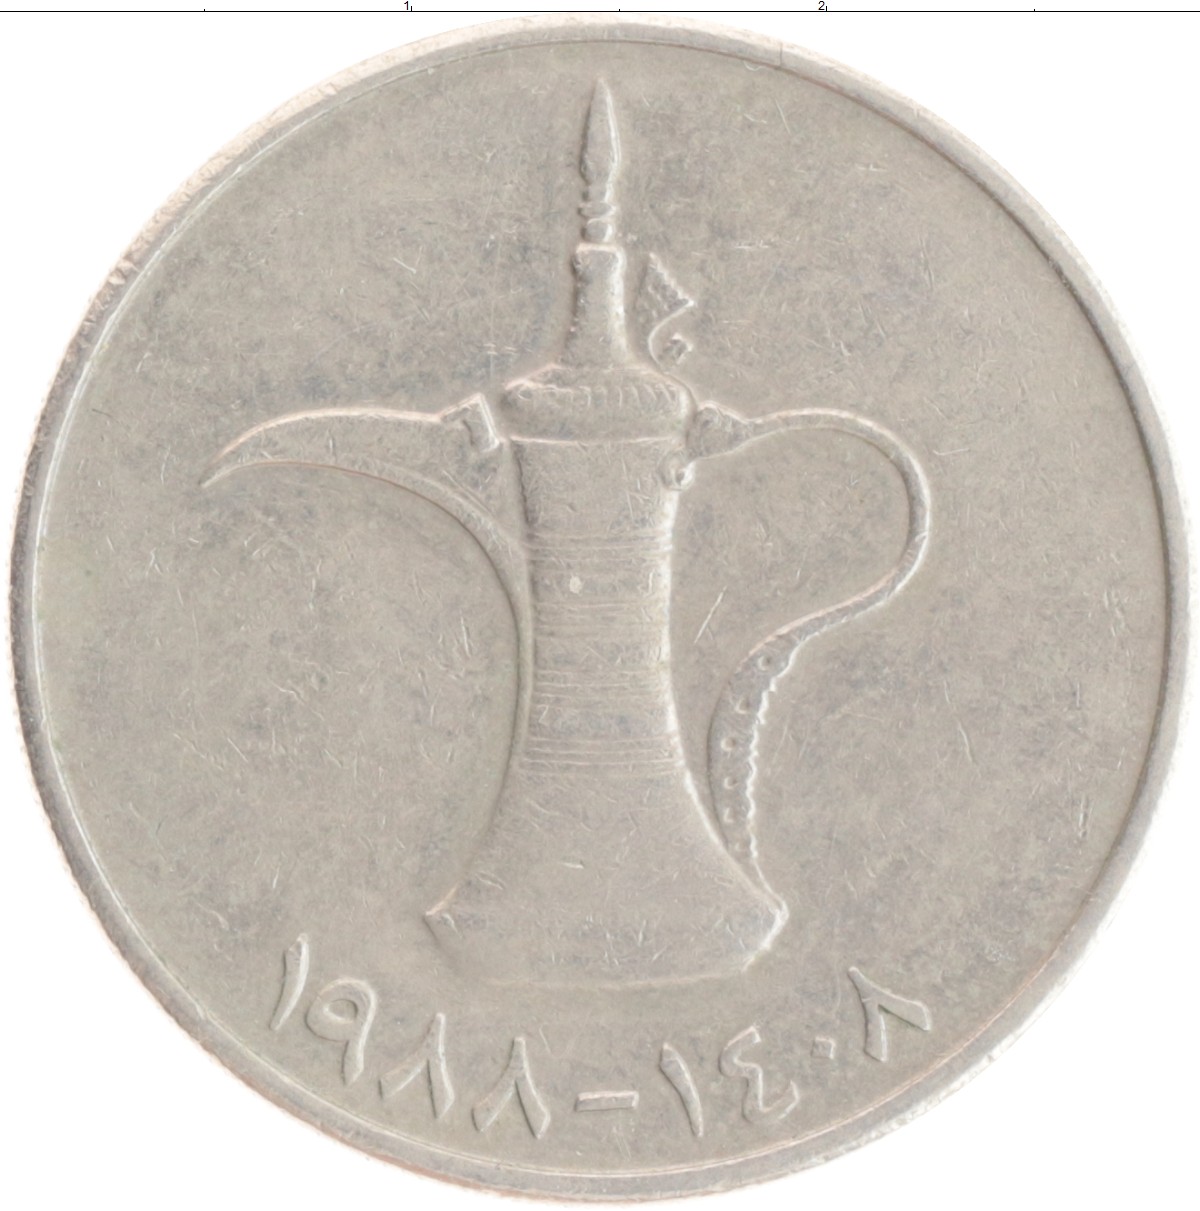 1 дирхам монета. Монеты арабских Эмиратов 1 дирхам. Номинал монет ОАЭ дирхам. Монеты эмираты 1 дирхам 1995. ОАЭ 1 дирхам, 1973-1989.